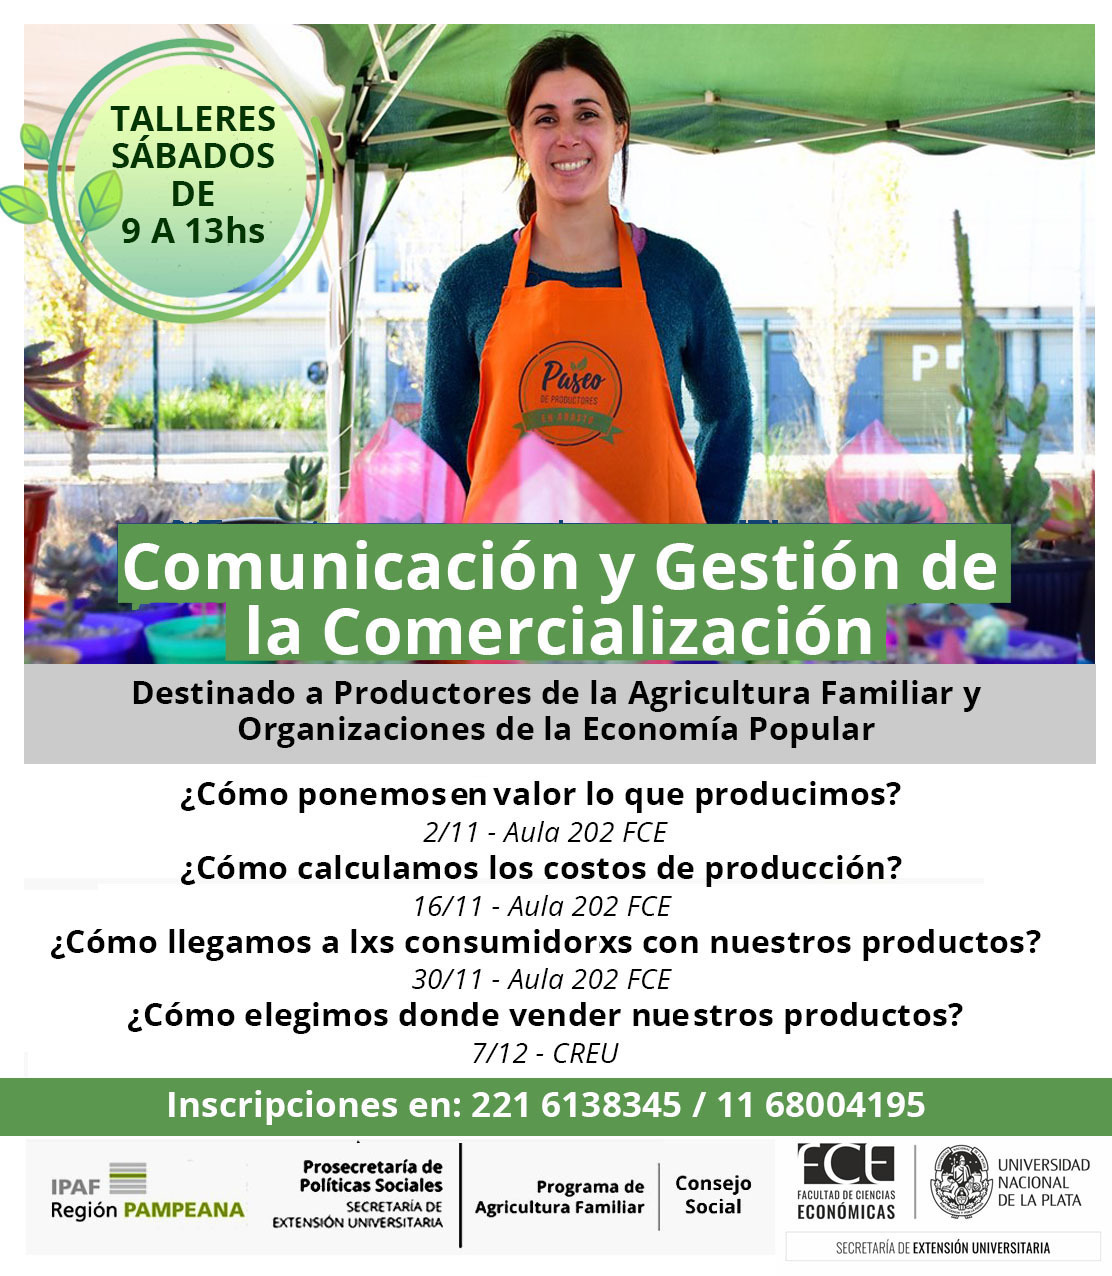 Curso "Comunicación y gestión de la comercialización en la economía popular, social y solidaria"